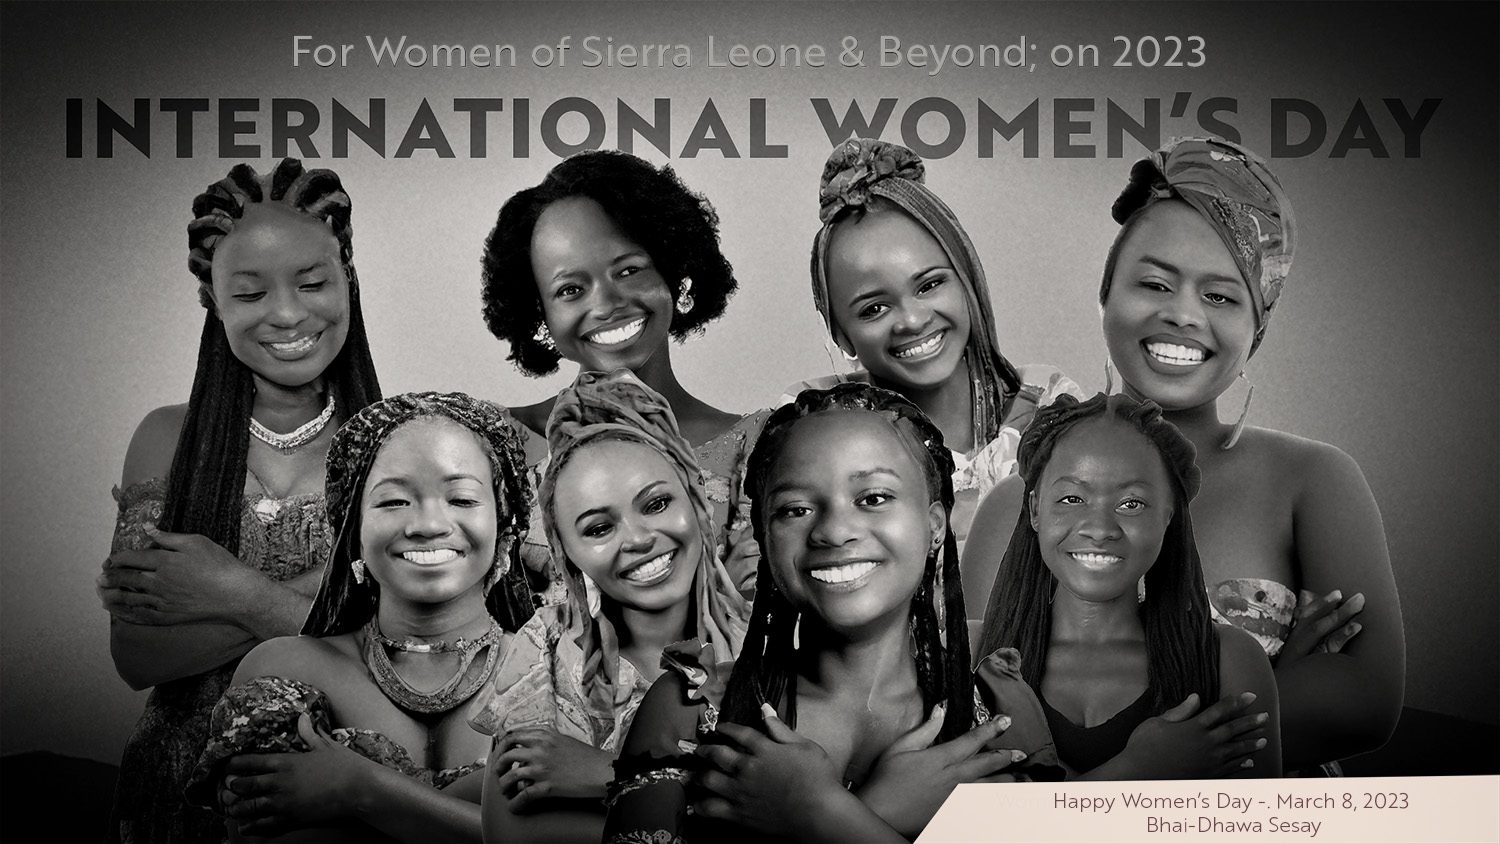 International Women's Day - Women in Sierra Leone